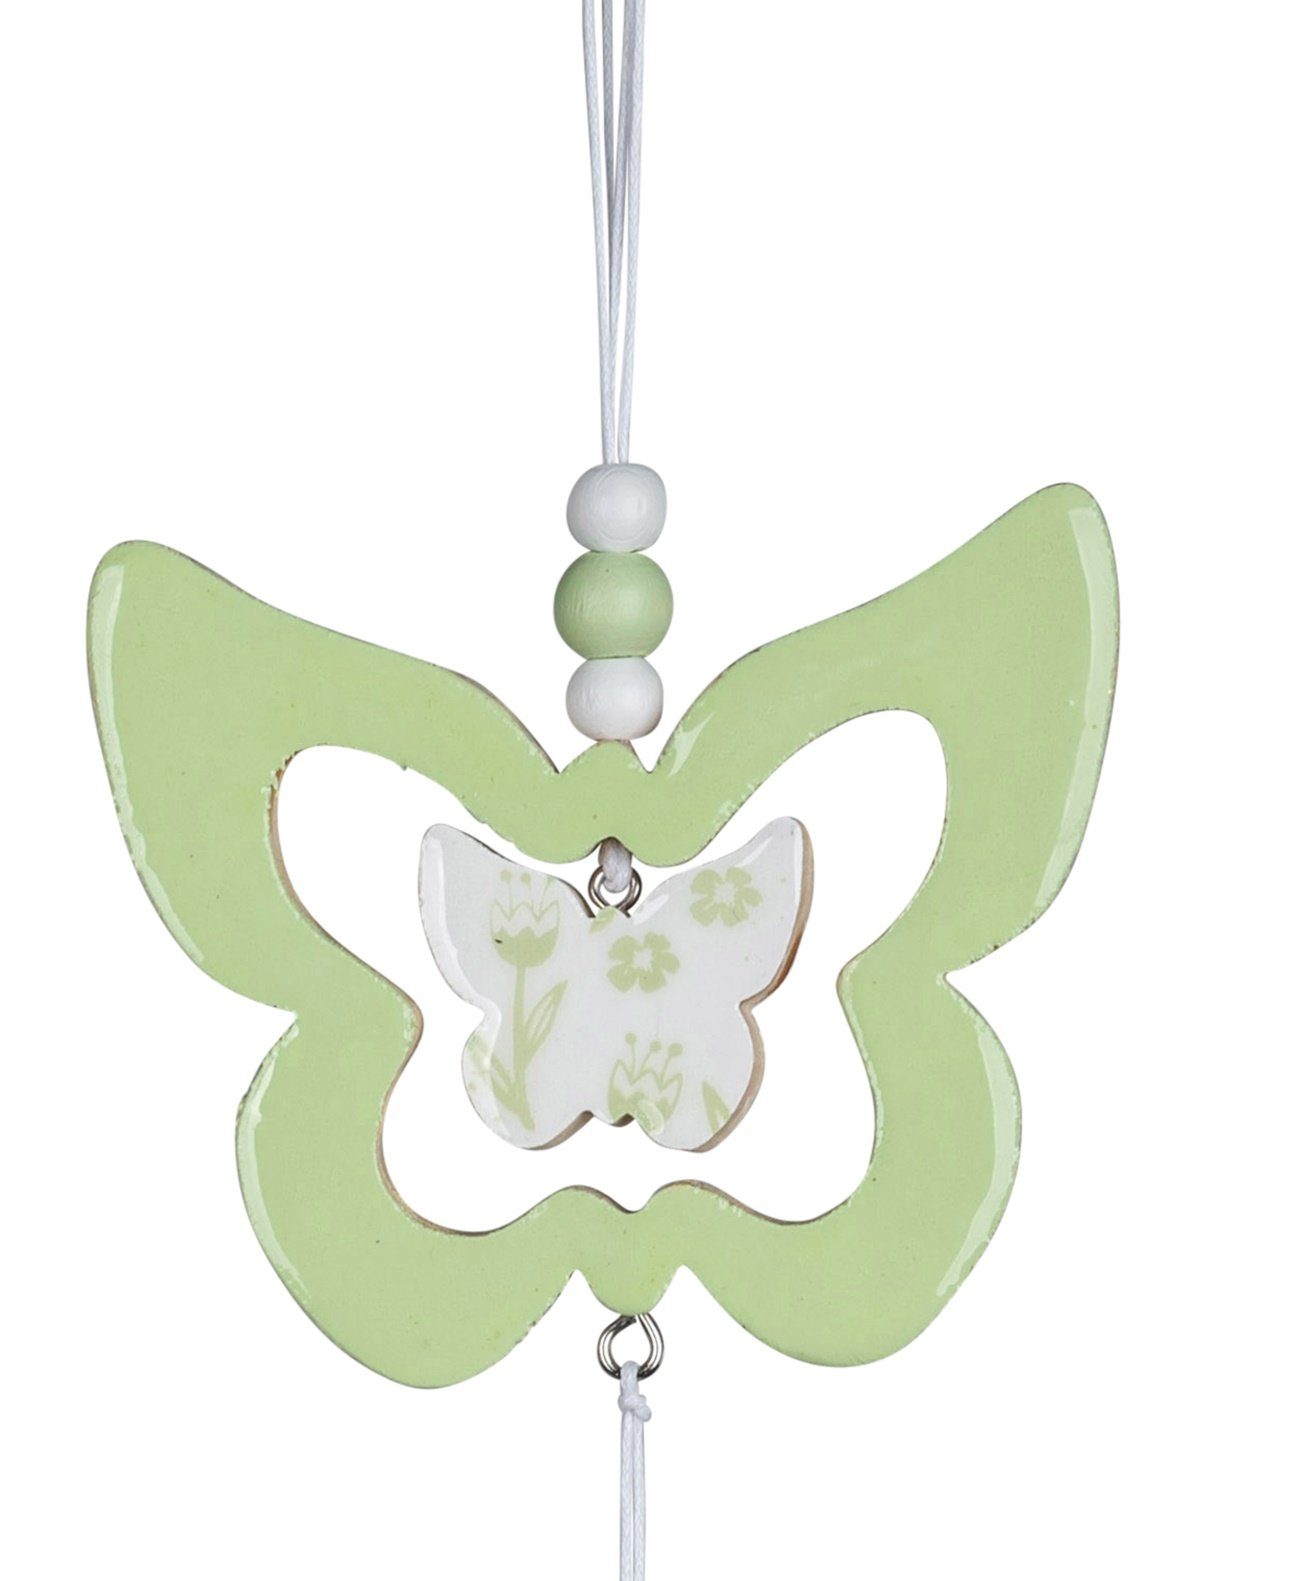 dekojohnson Hängedekoration Fenster-Girlande-Schmetterling mint grün 10x33cm